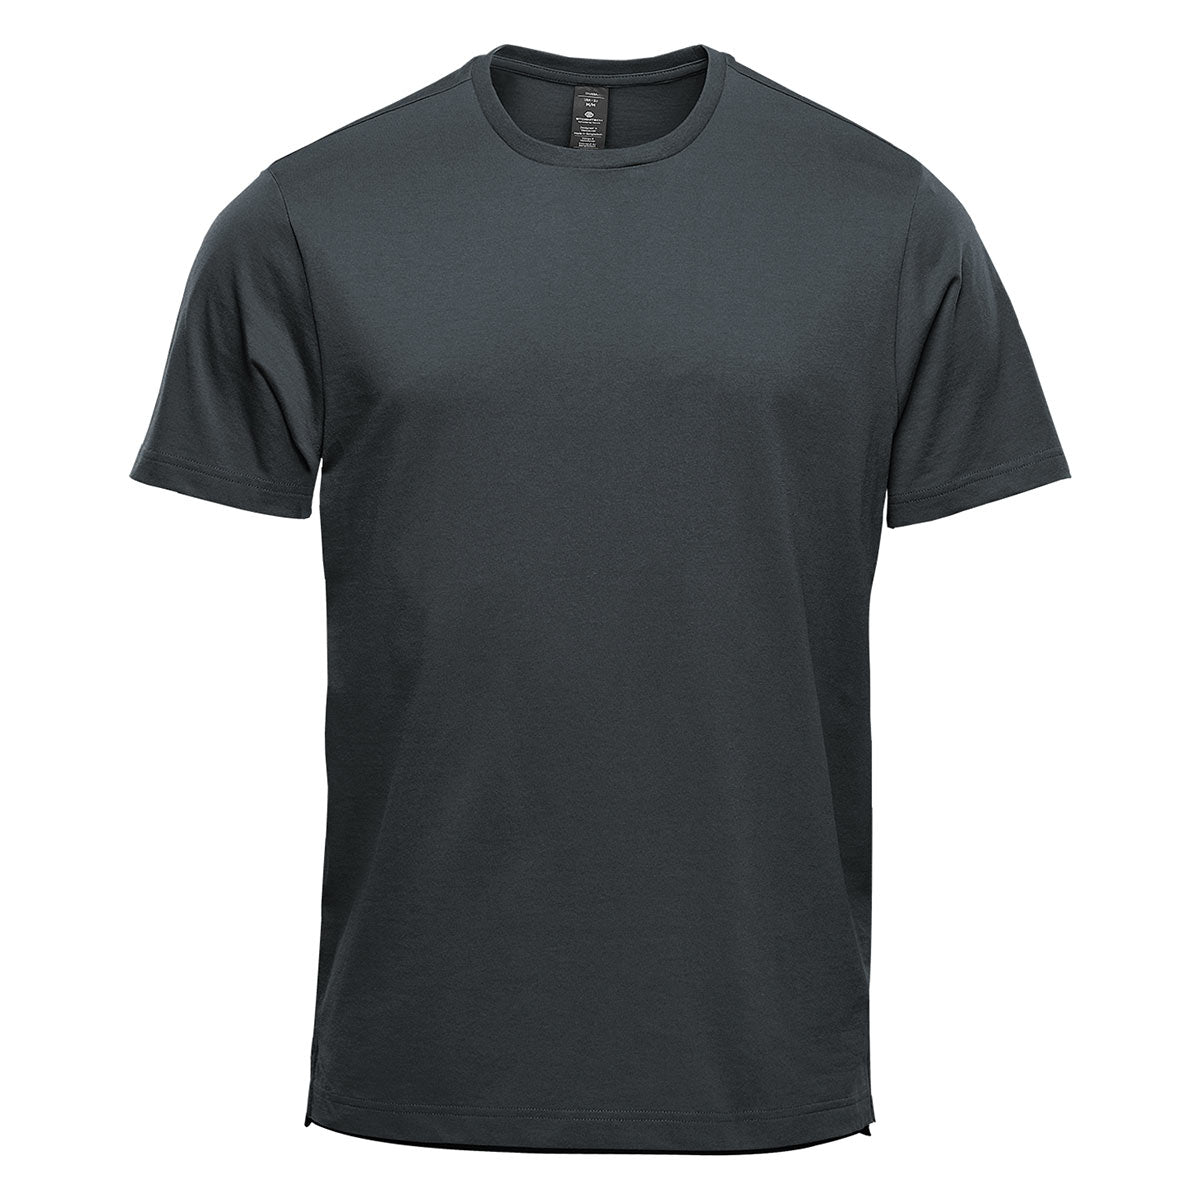 Plt Sport Black Short Sleeve Melange T-Shirt